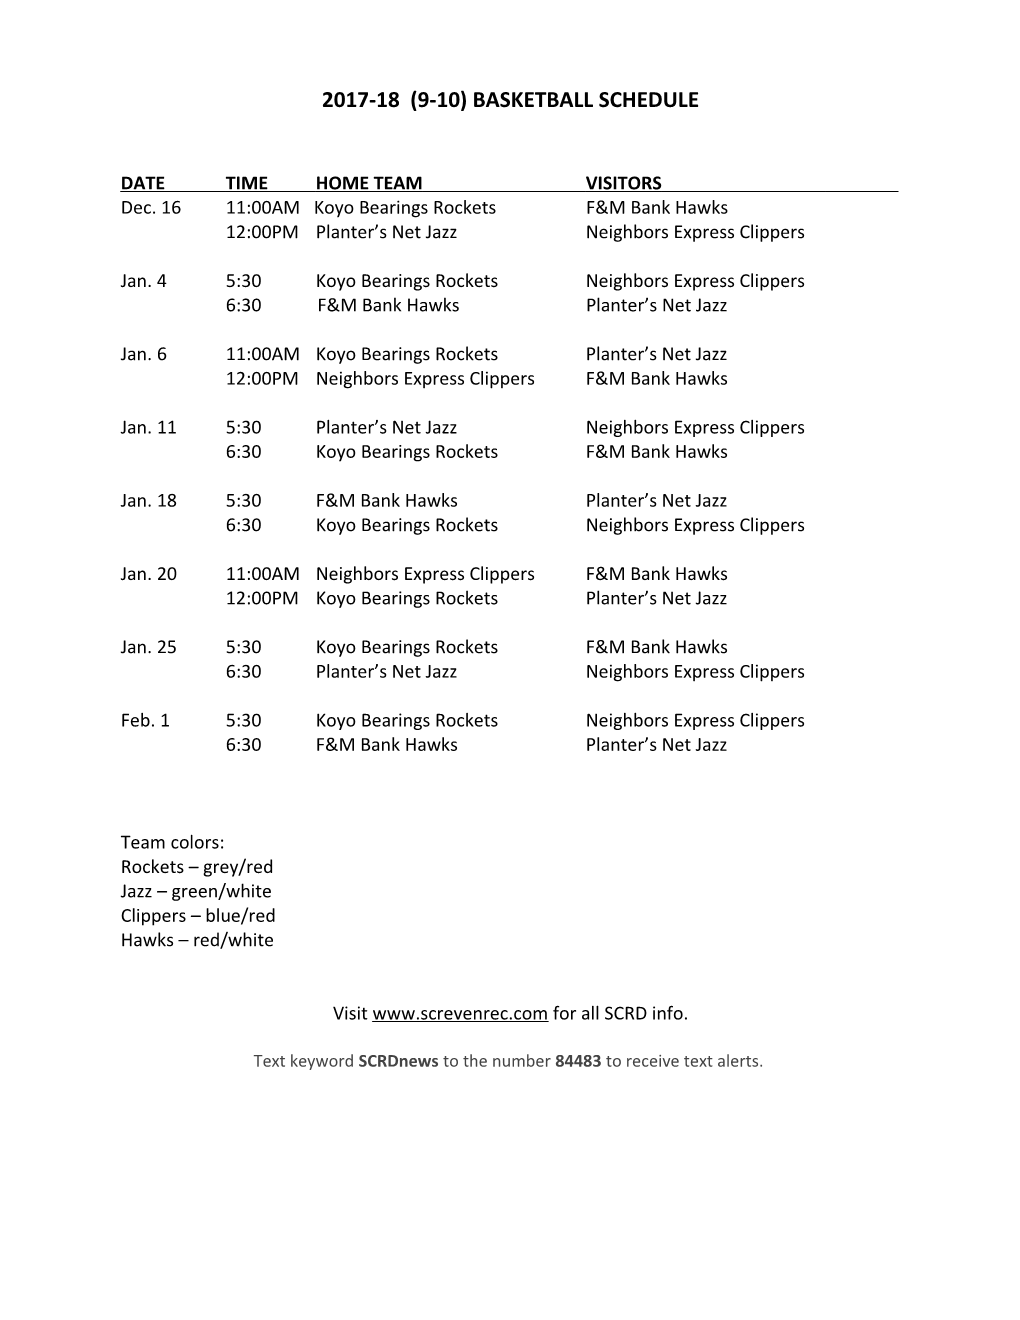 2009 Midget Girls Softball Schedule